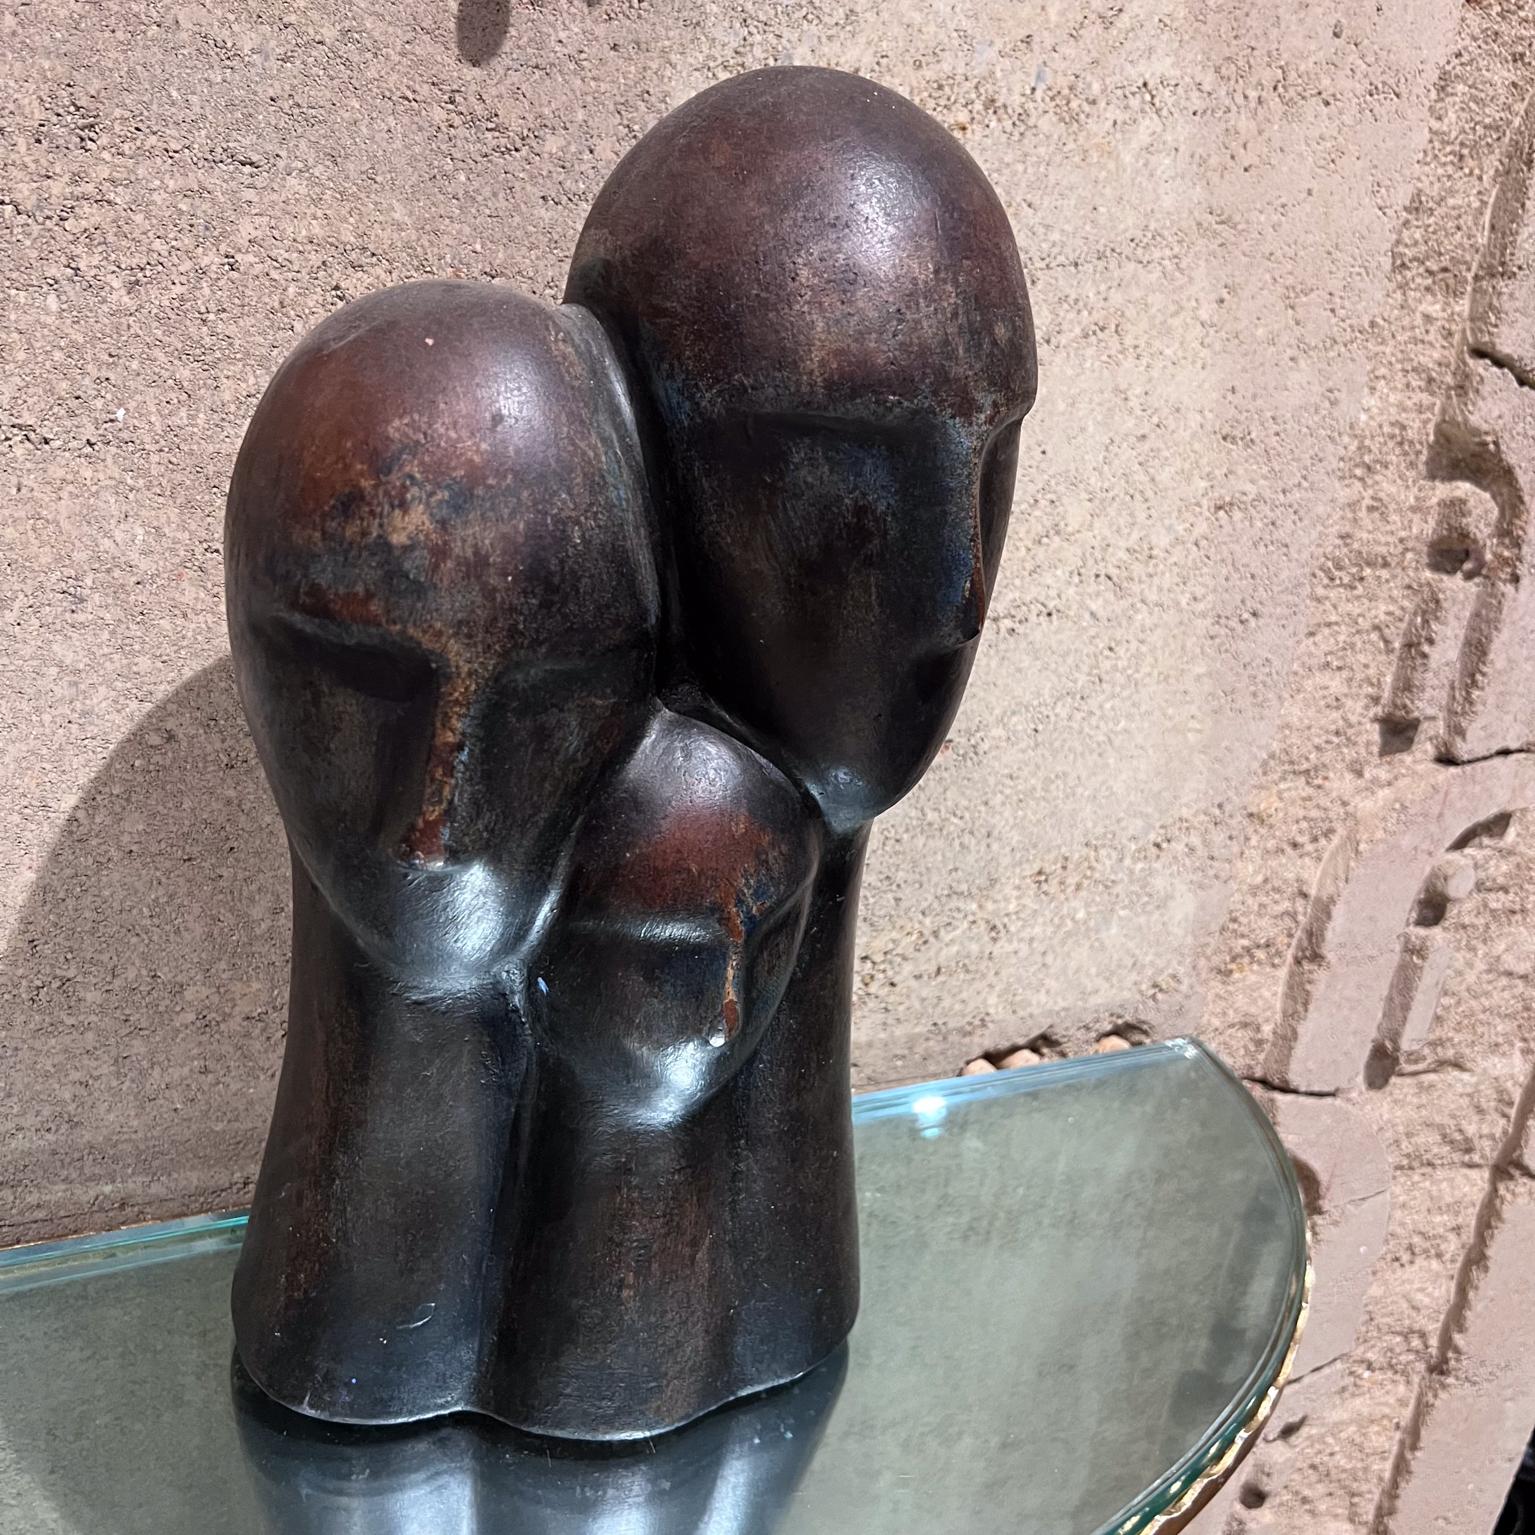 Sculpture abstraite à 3 têtes en poterie d'art des années 1970 
Patine terre cuite et faux bronze.
15,5 h x 8 l x 6 p
Aucune information disponible sur le fabricant
Condition vintage d'occasion non restaurée.
Veuillez vous référer aux images de la